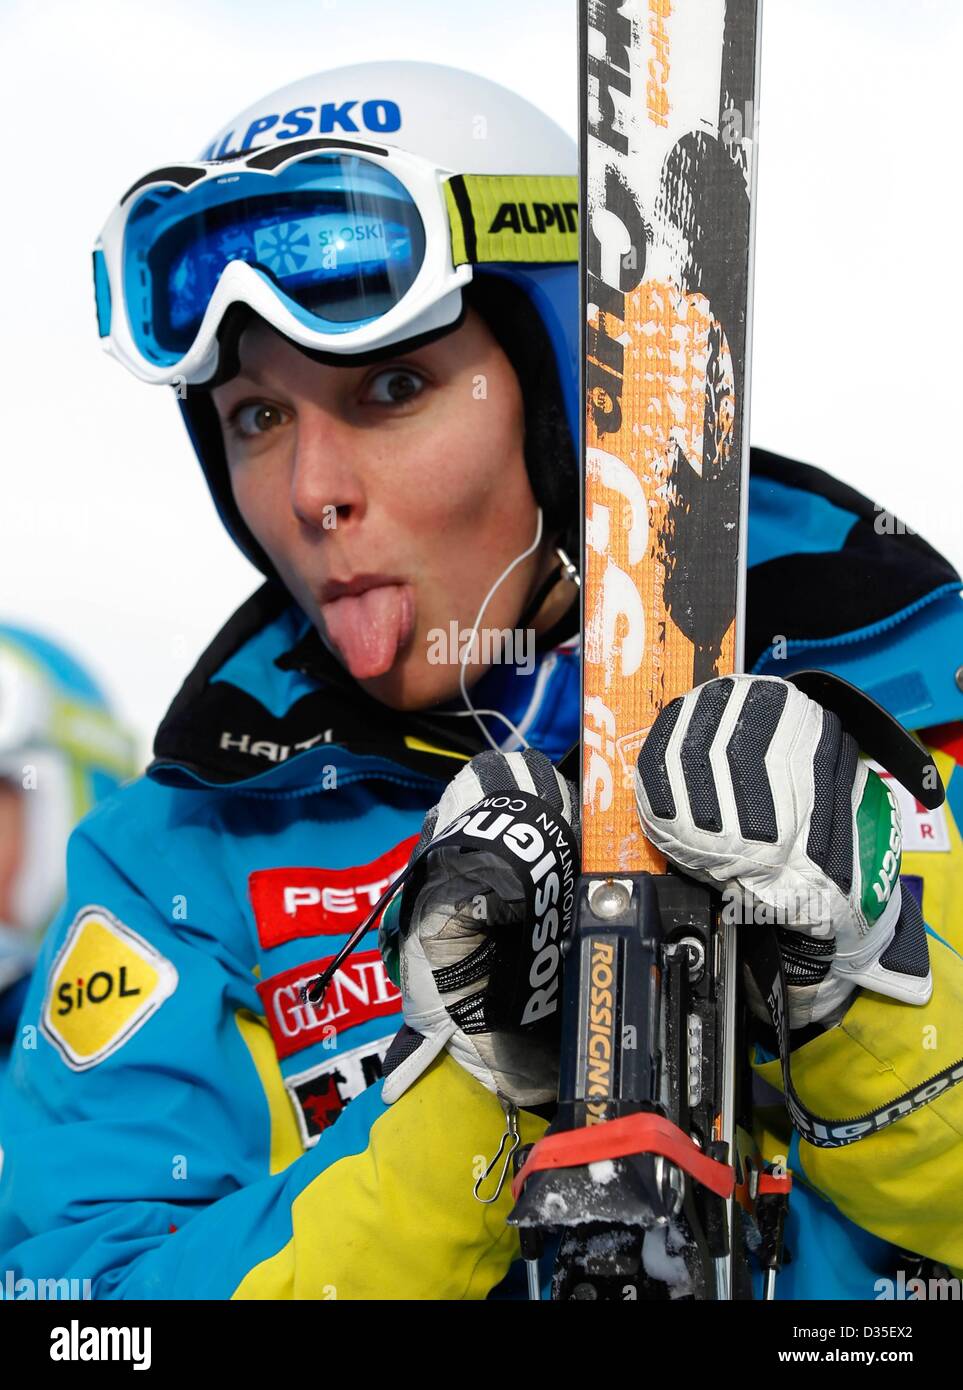 10.02.2013, Schladming, Österreich. FIS Alpine Ski World Championships 2013 Downhill für Frauen zeigt Bild Ilka SLO Stockfoto